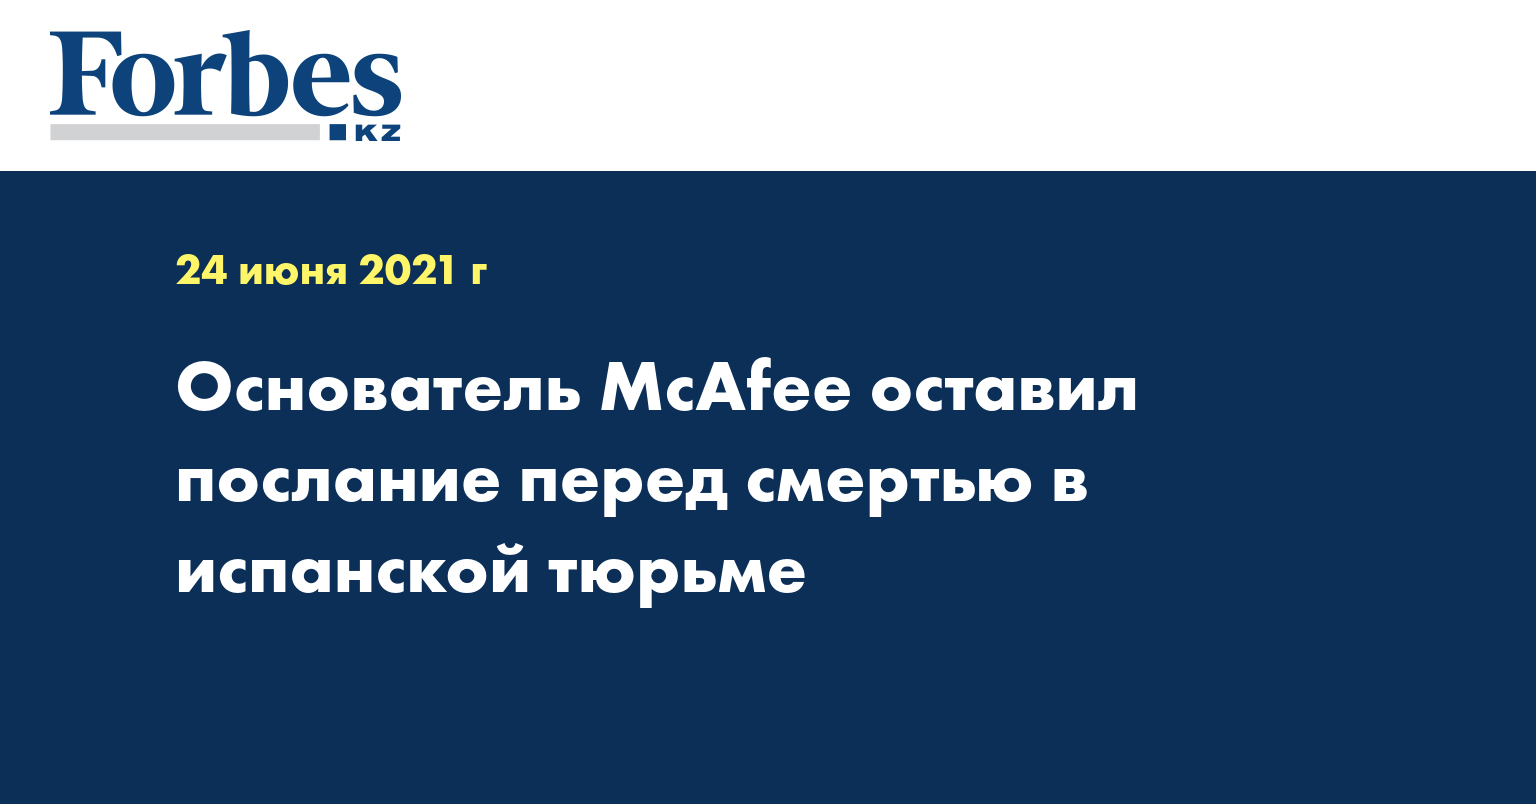 Основатель McAfee оставил послание перед смертью в испанской тюрьме